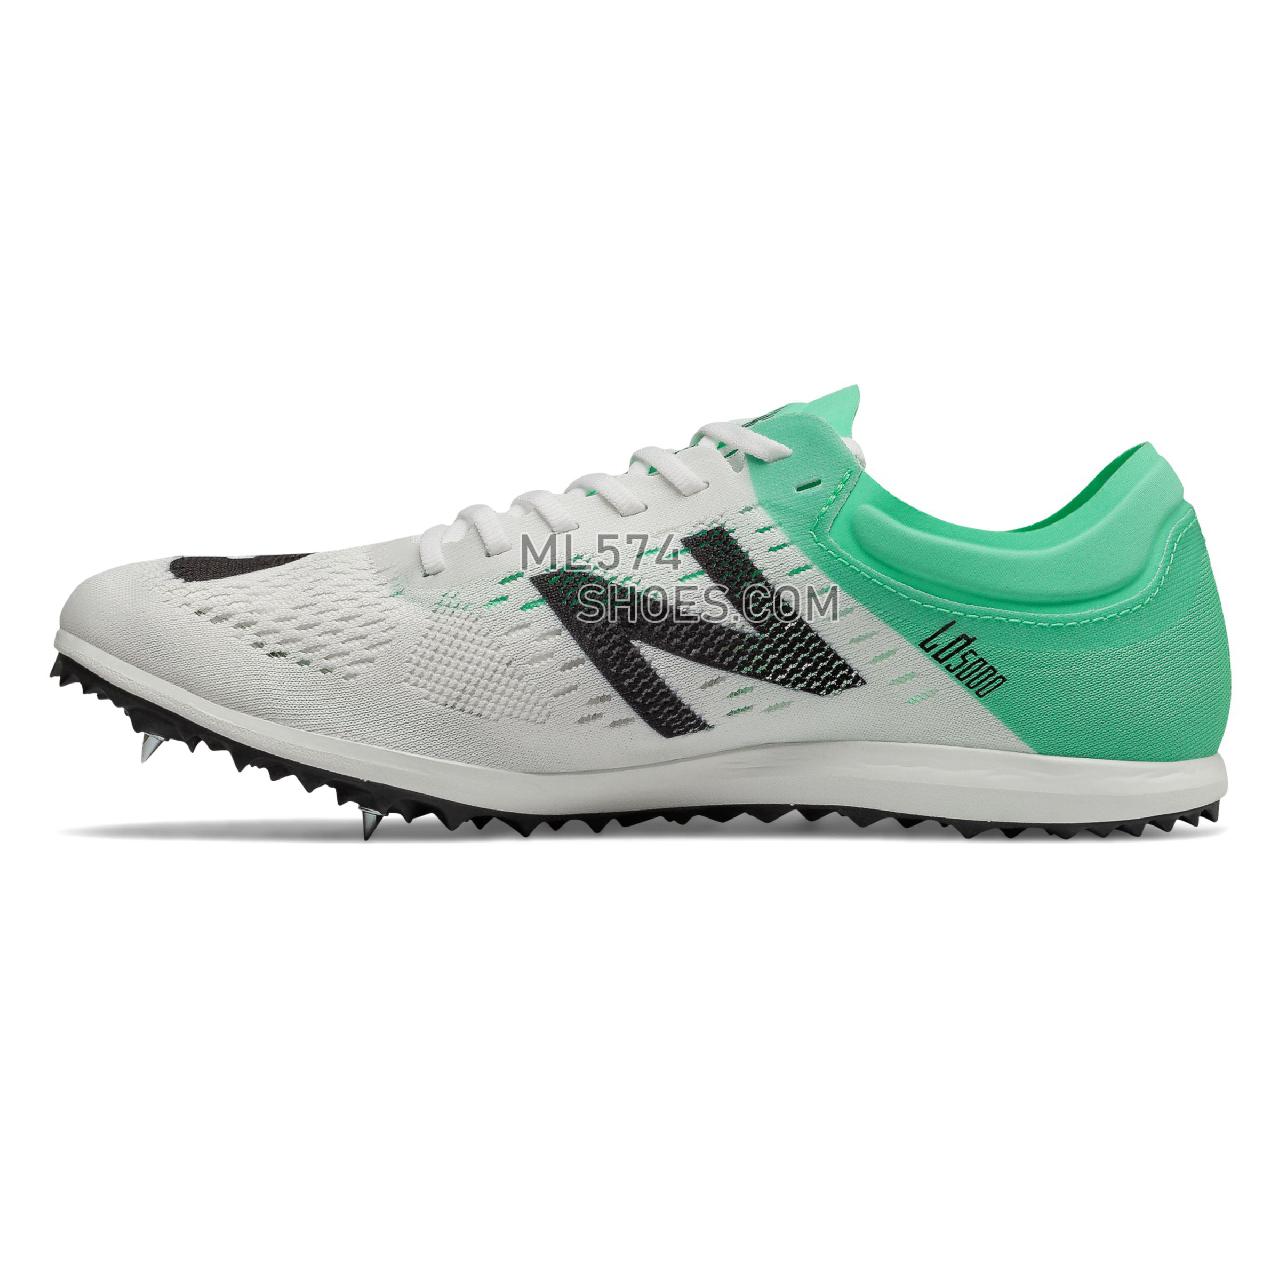 New Balance LD5000v6 Spike - Women's LD5000v6 Spike Running - White with Neon Emerald - WLD5KWG6